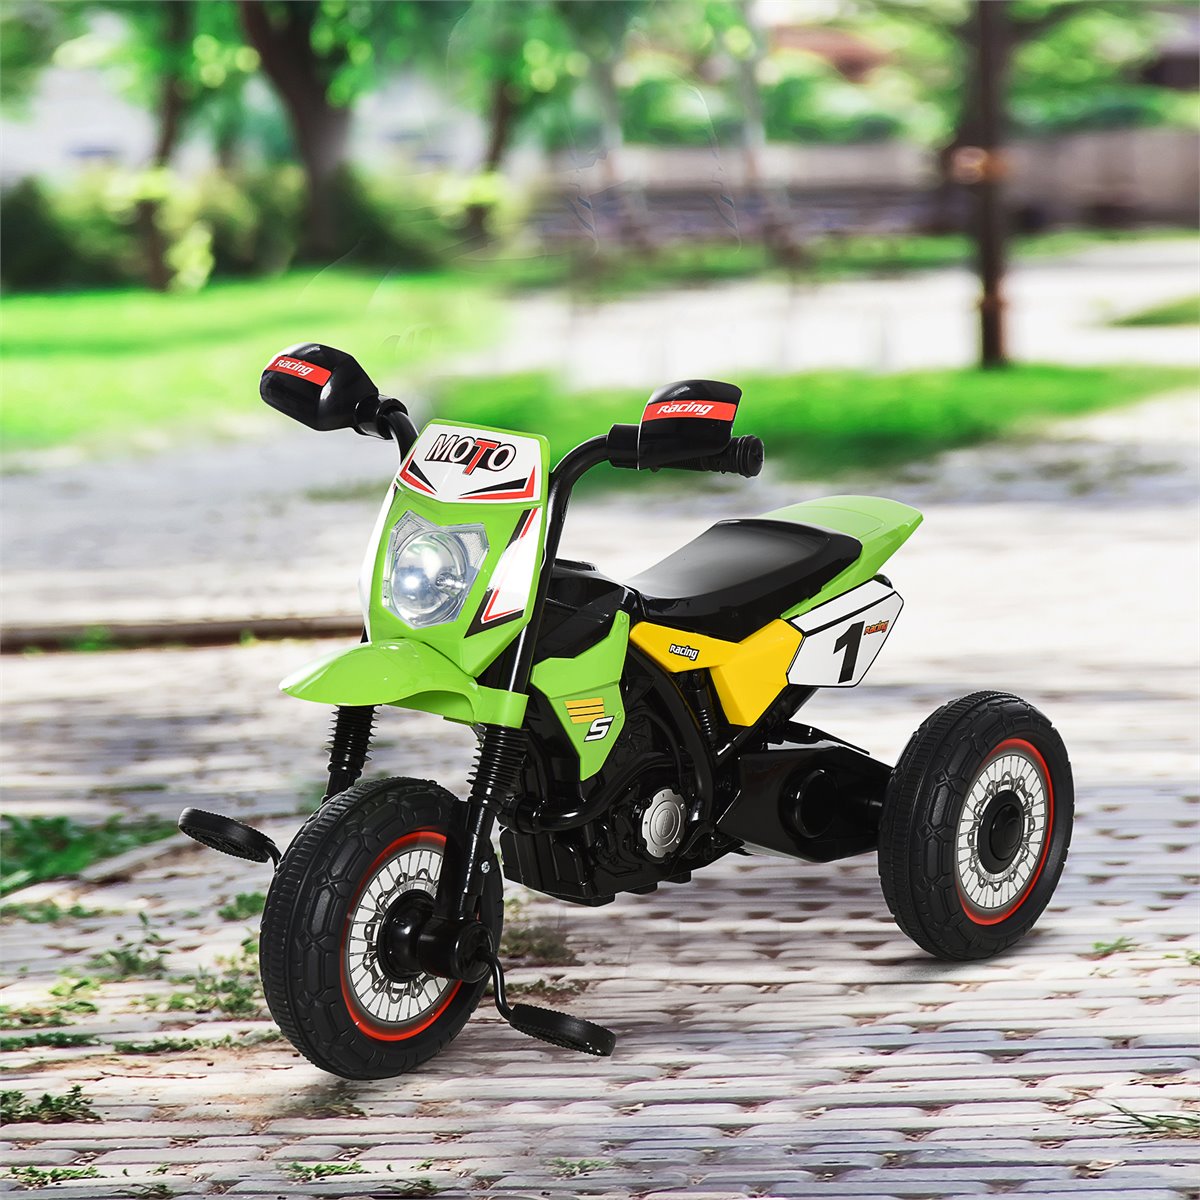 Bolo Da Motocicleta (criança) Foto de Stock - Imagem de